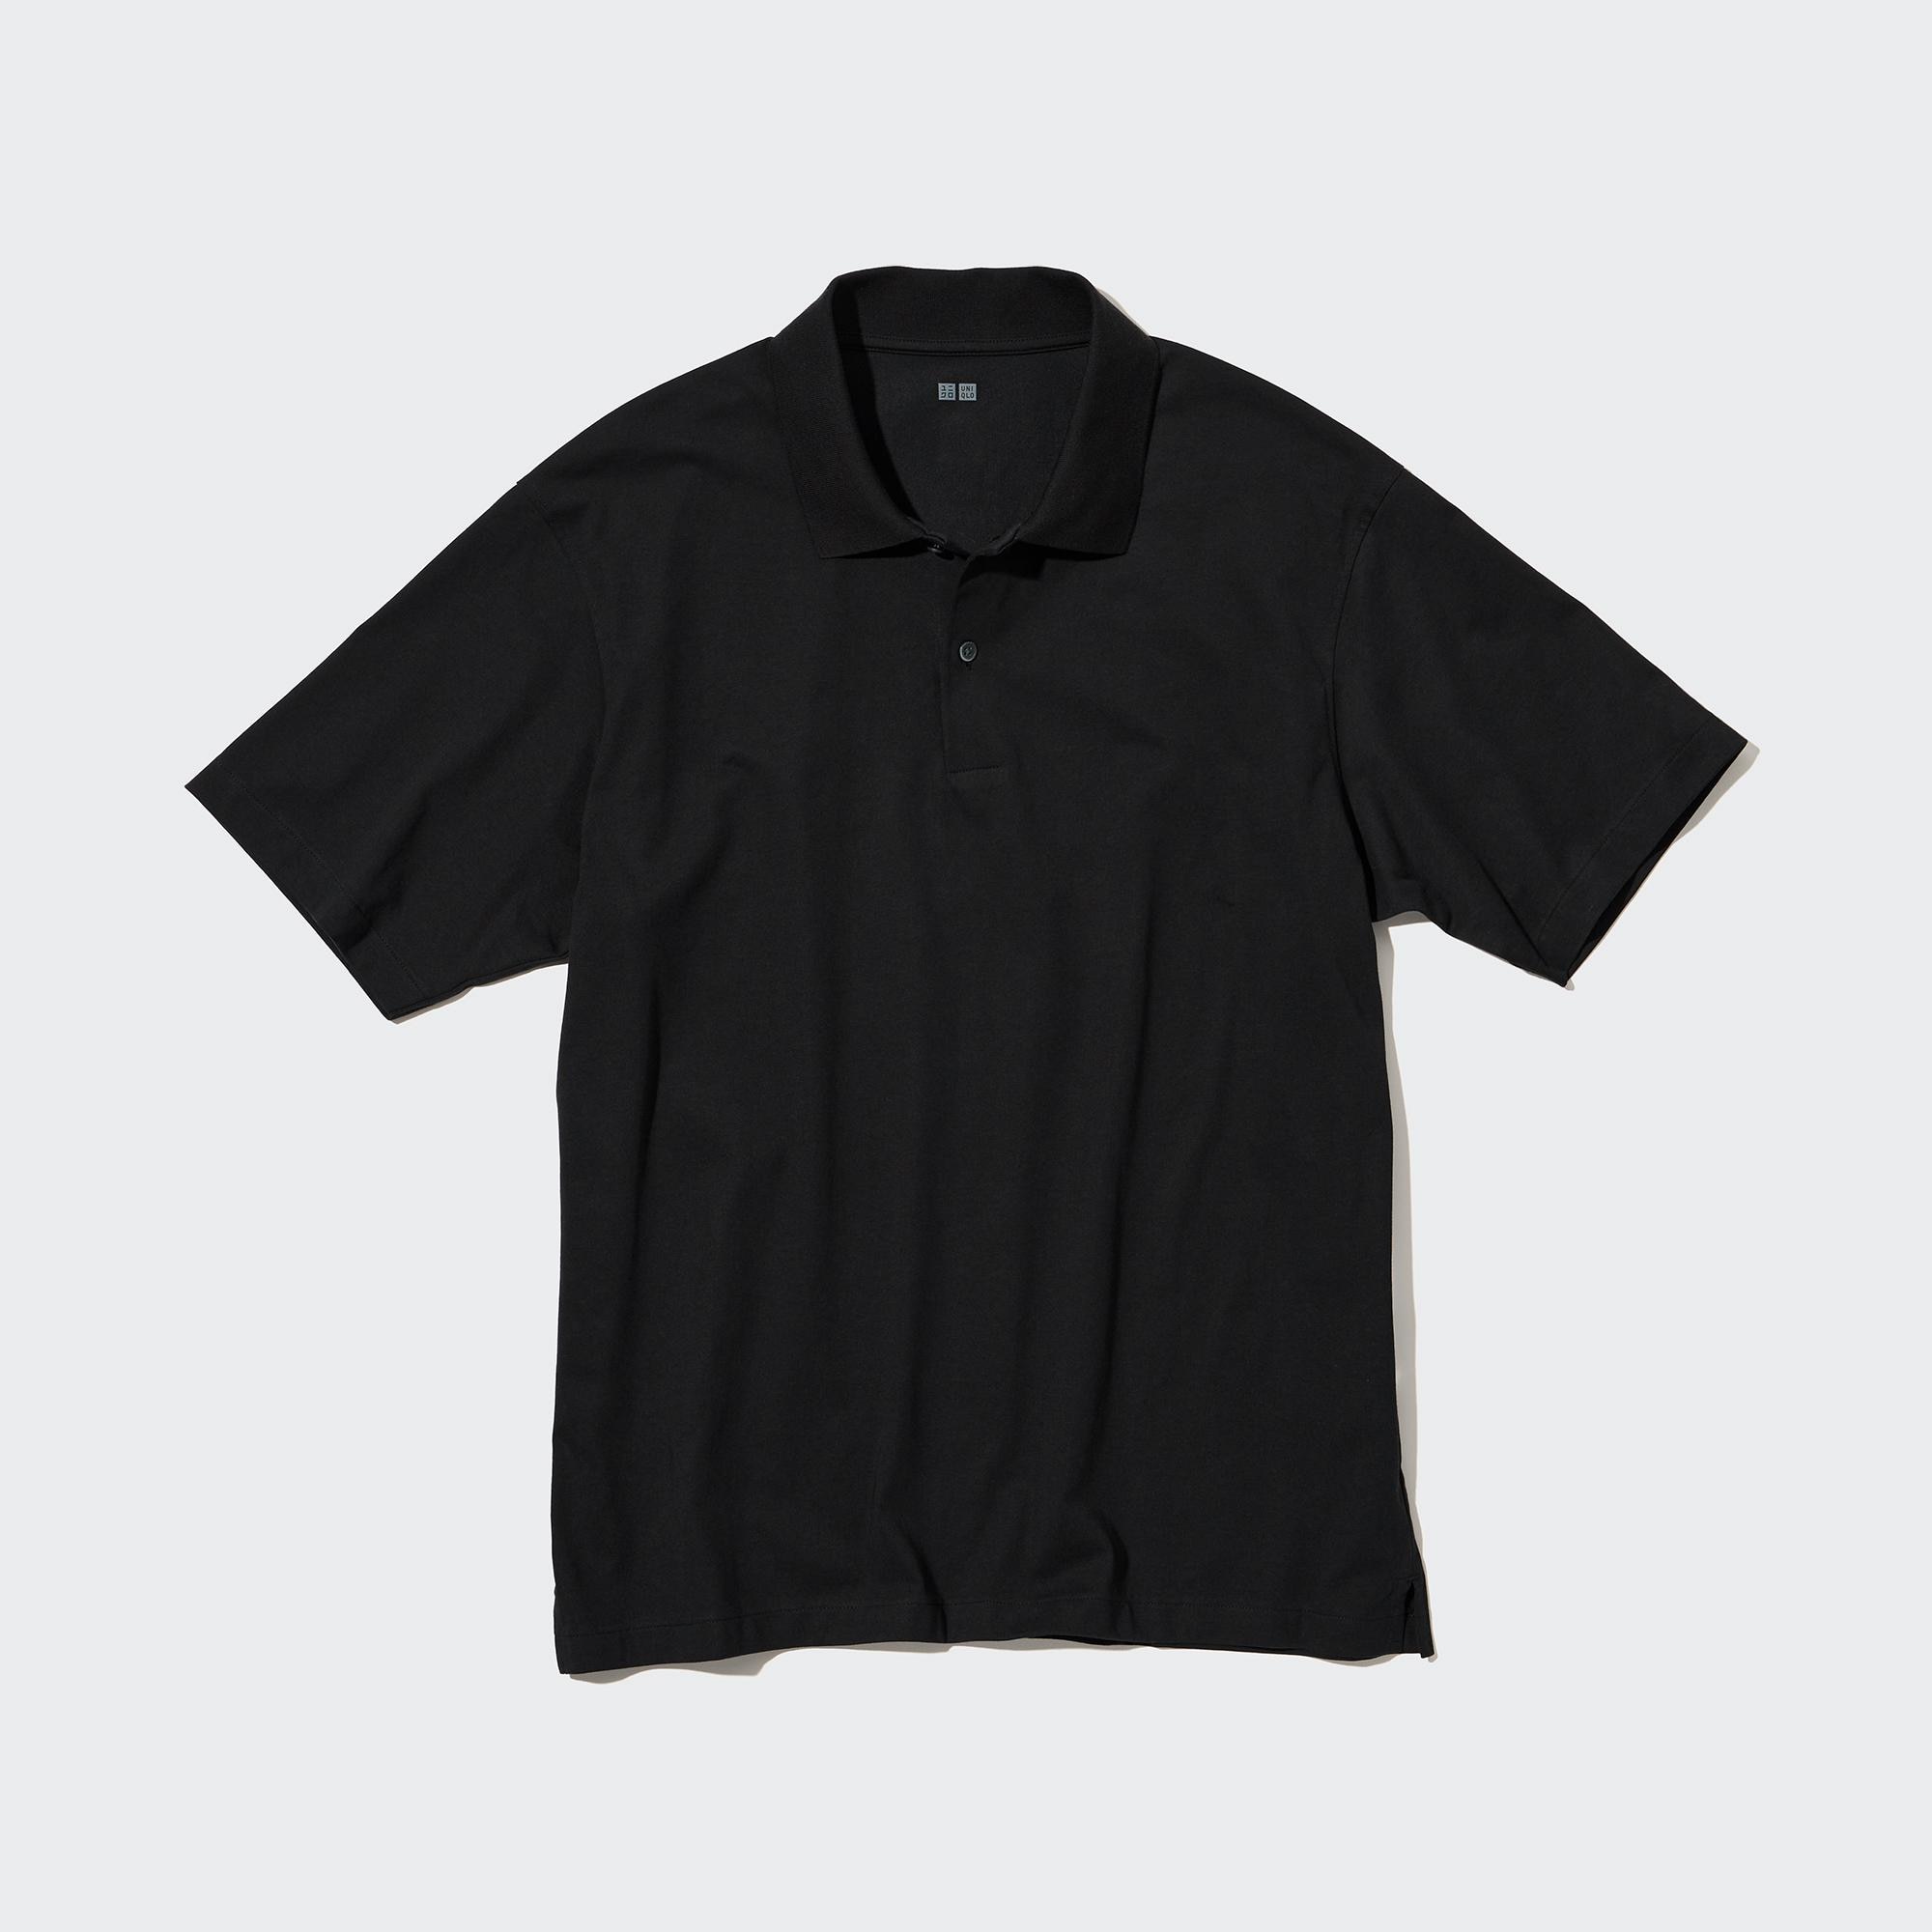 Uniqlo Airism Polo Shirt Black Mens Fashion Tops  Sets Tshirts  Polo  Shirts on Carousell